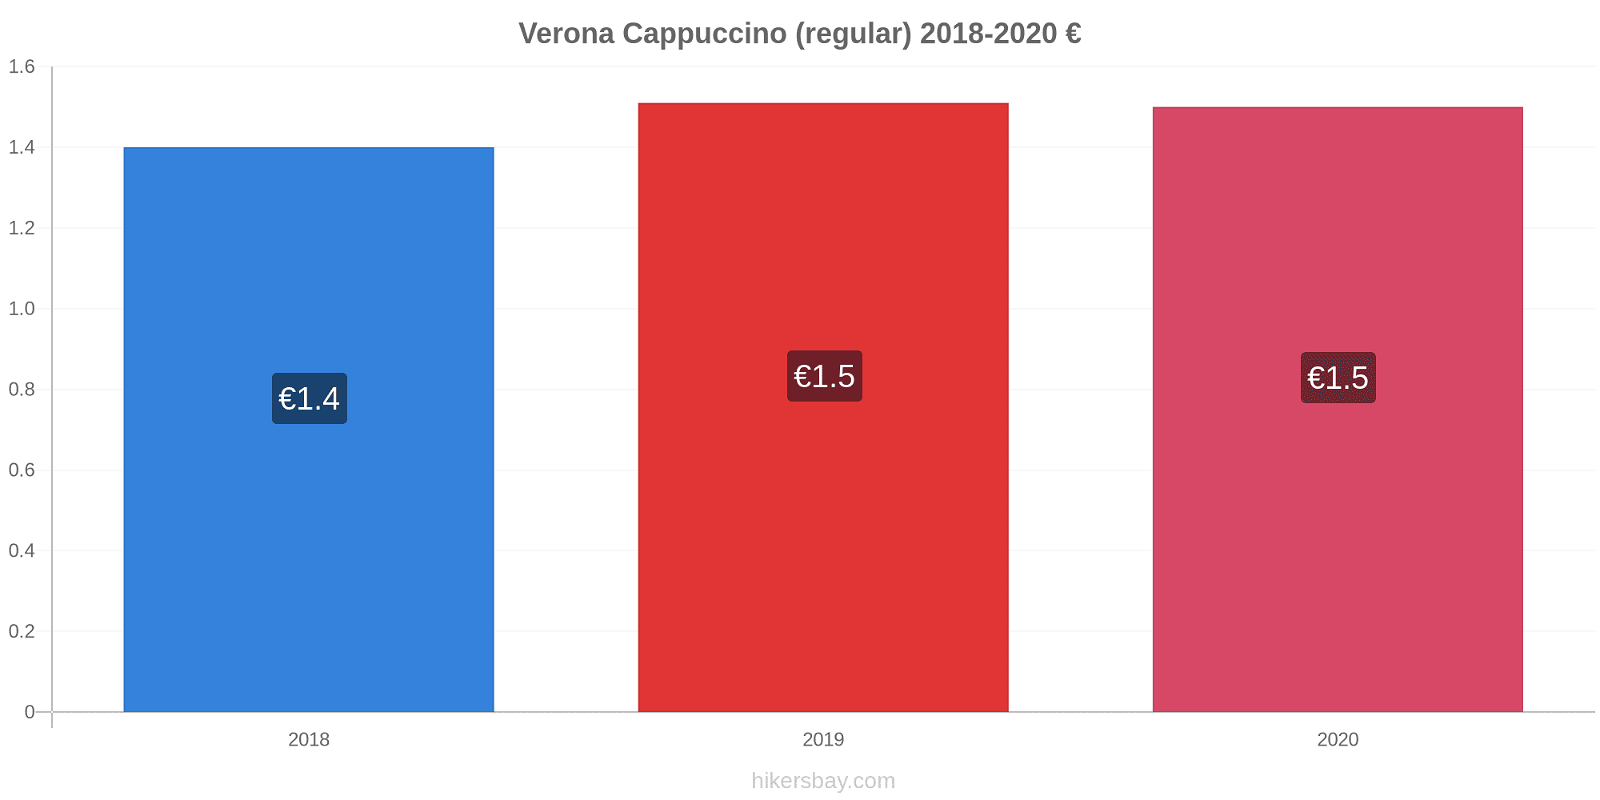 Verona variação de preço Capuccino (regular) hikersbay.com